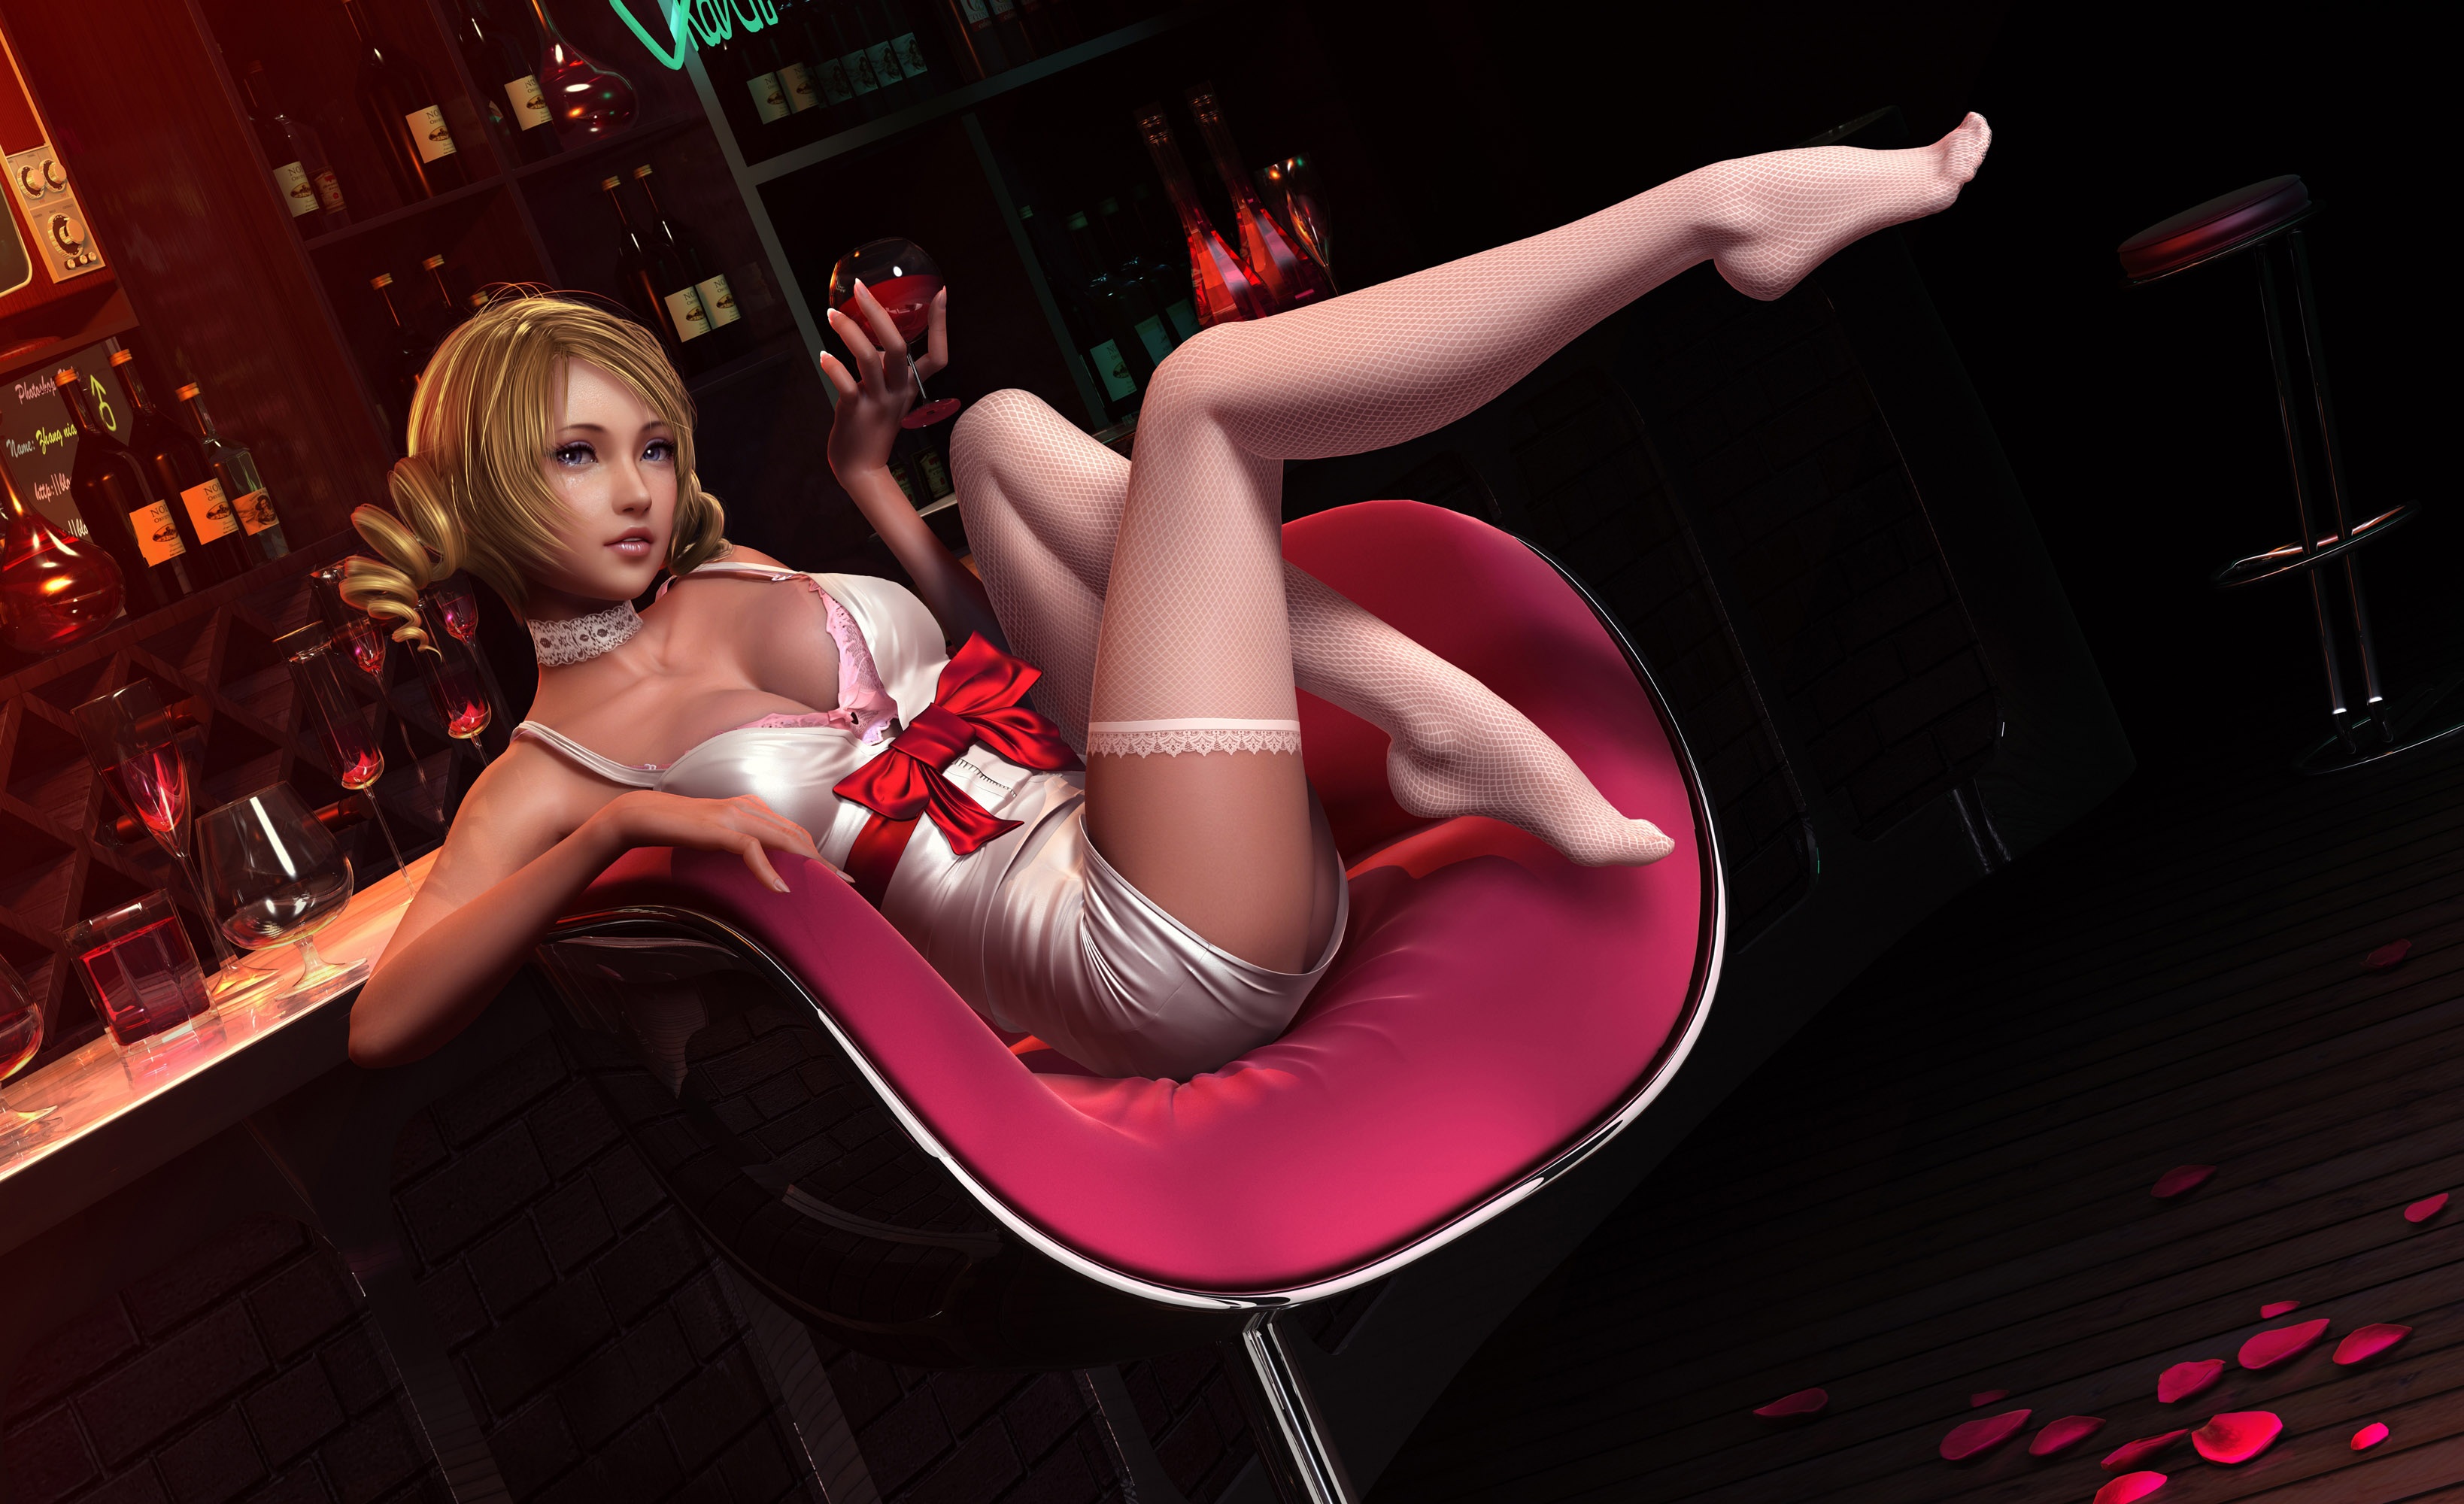 аниме картинка девушка сидит в баре и выпивает catherine by znz